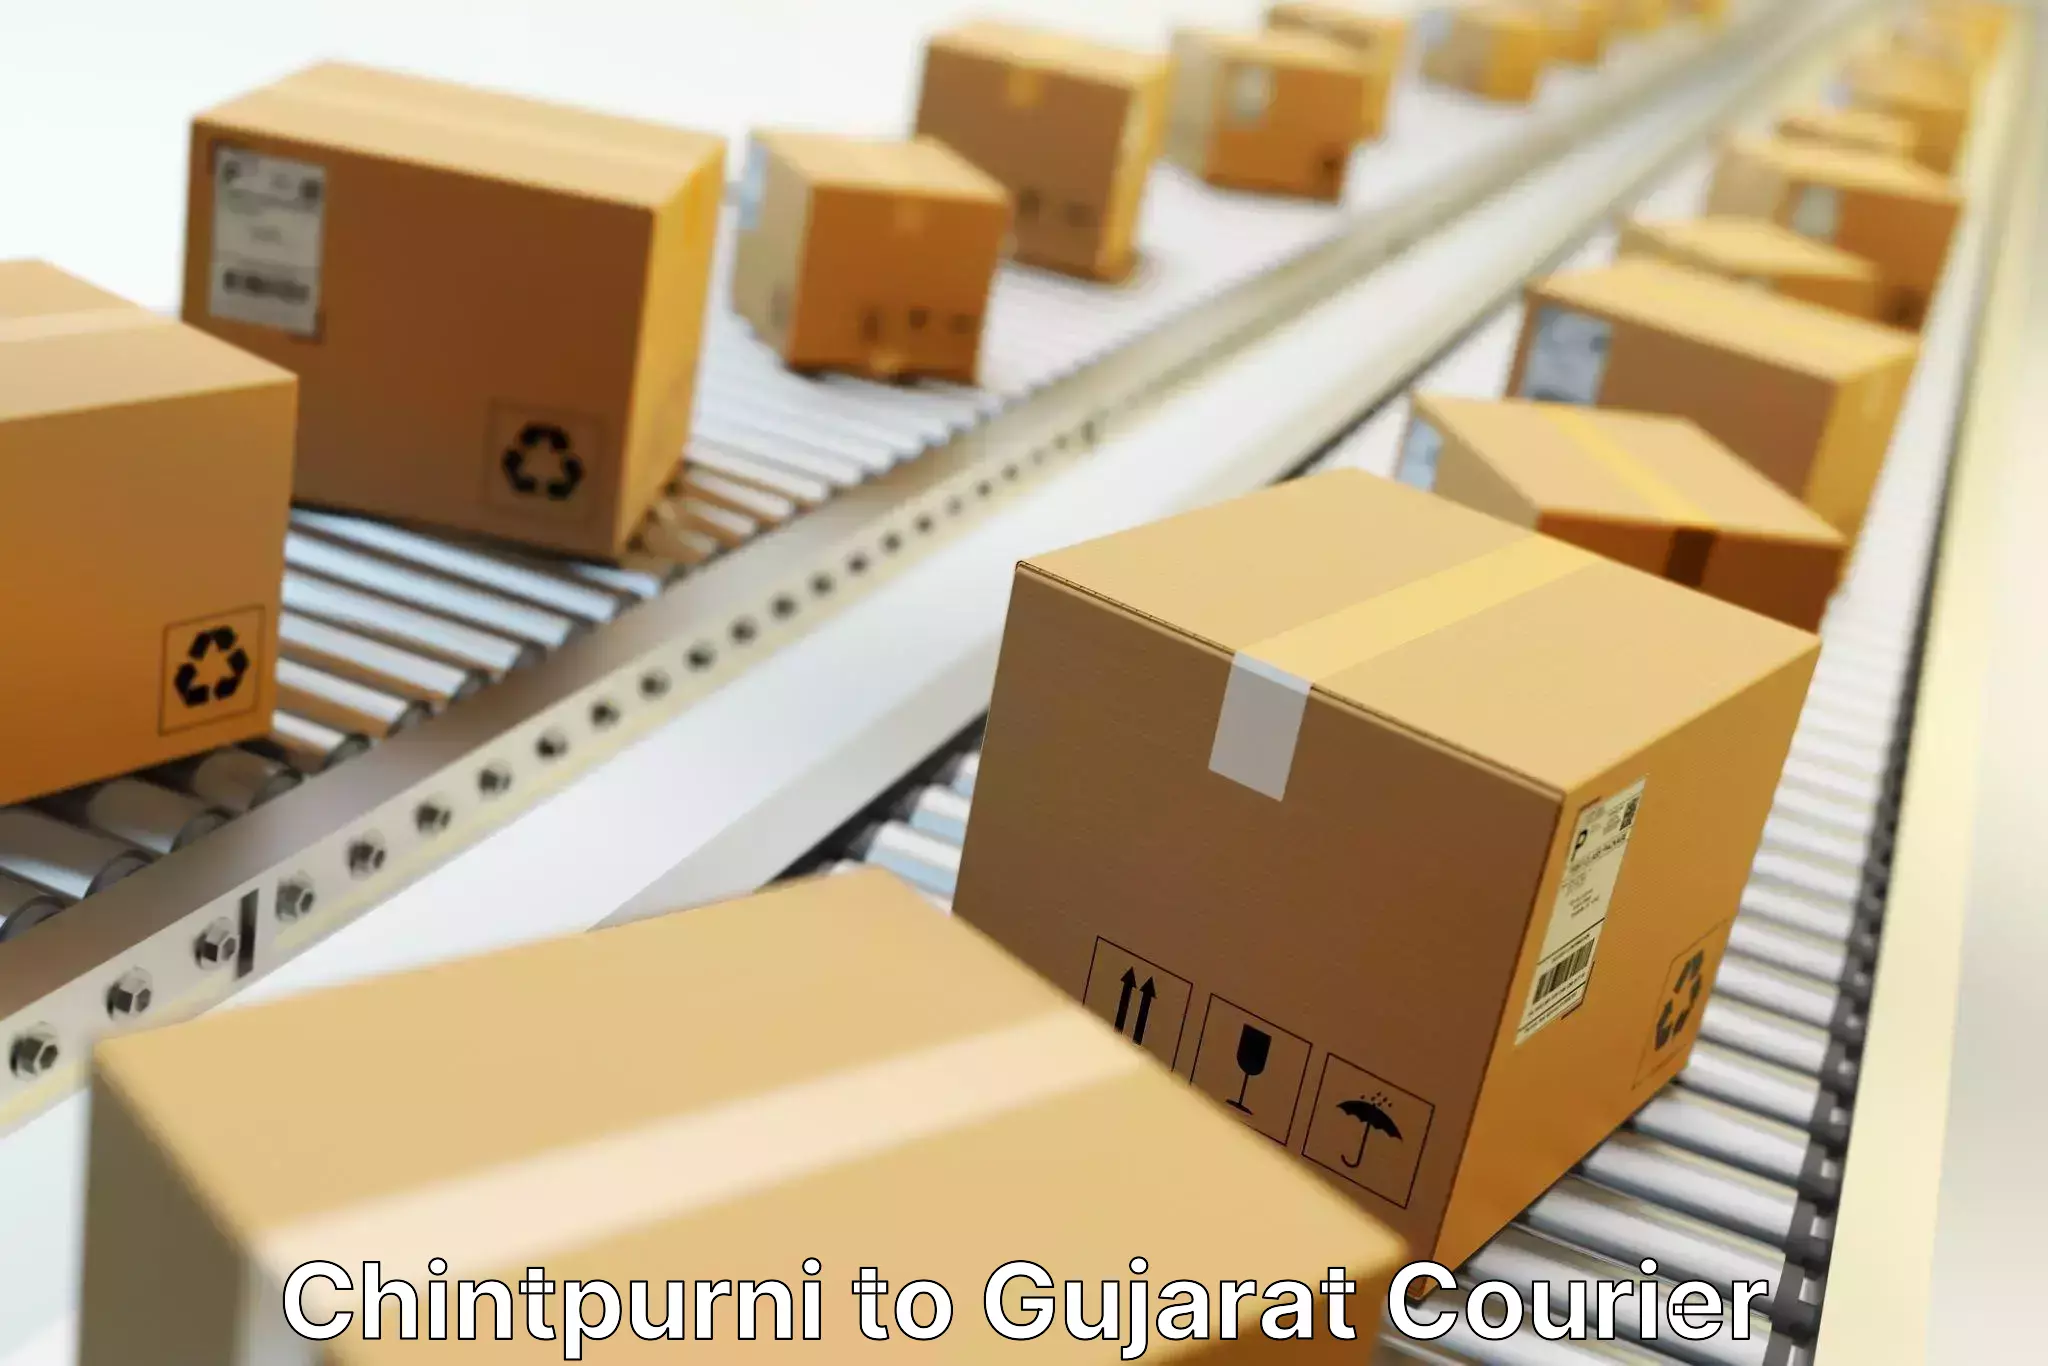 Express mail service Chintpurni to Kalol Gujarat